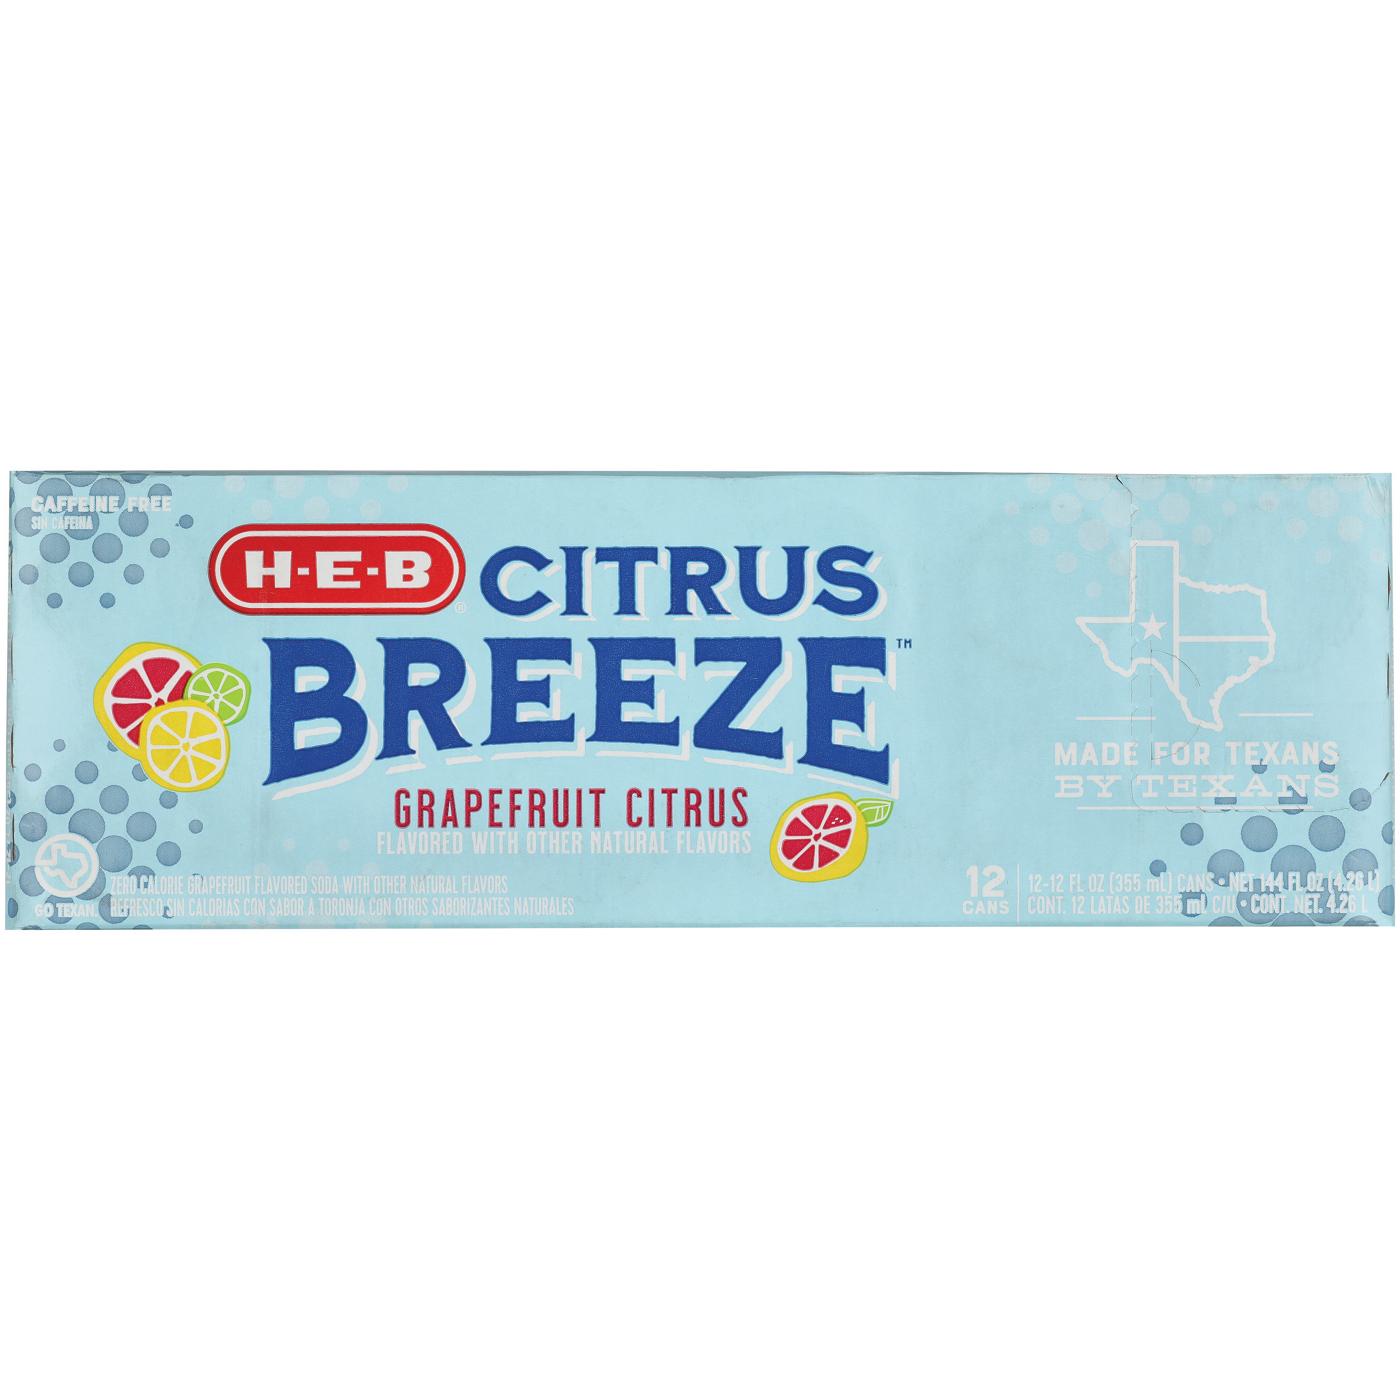 H-E-B Citrus Breeze Zero Calorie Grapefruit Soda 12 pk Cans; image 1 of 2